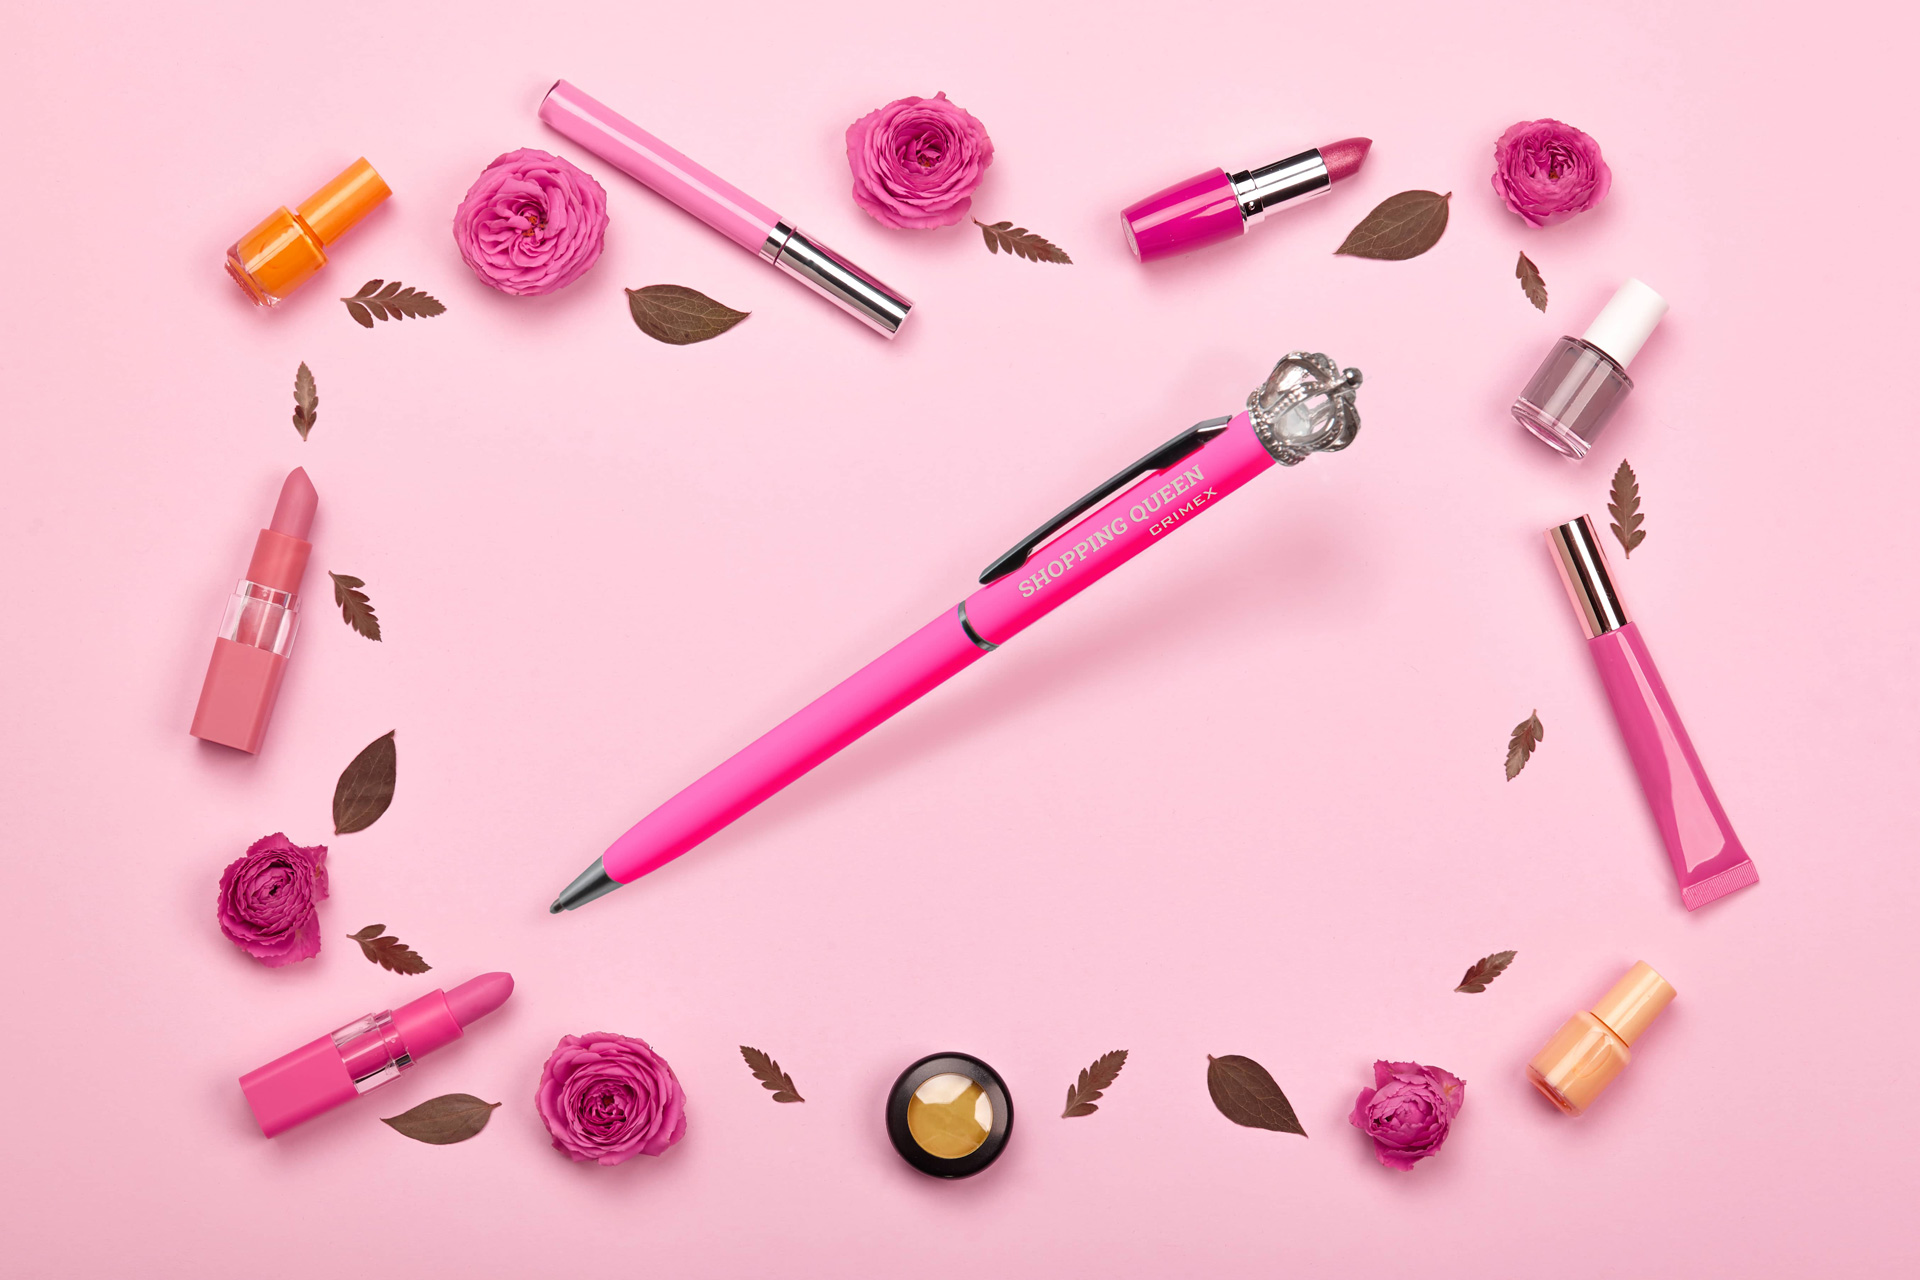 Rosa Shopping Queen Kugelschreiber von Blättern, Lippenstift und Nagellack eingekreist